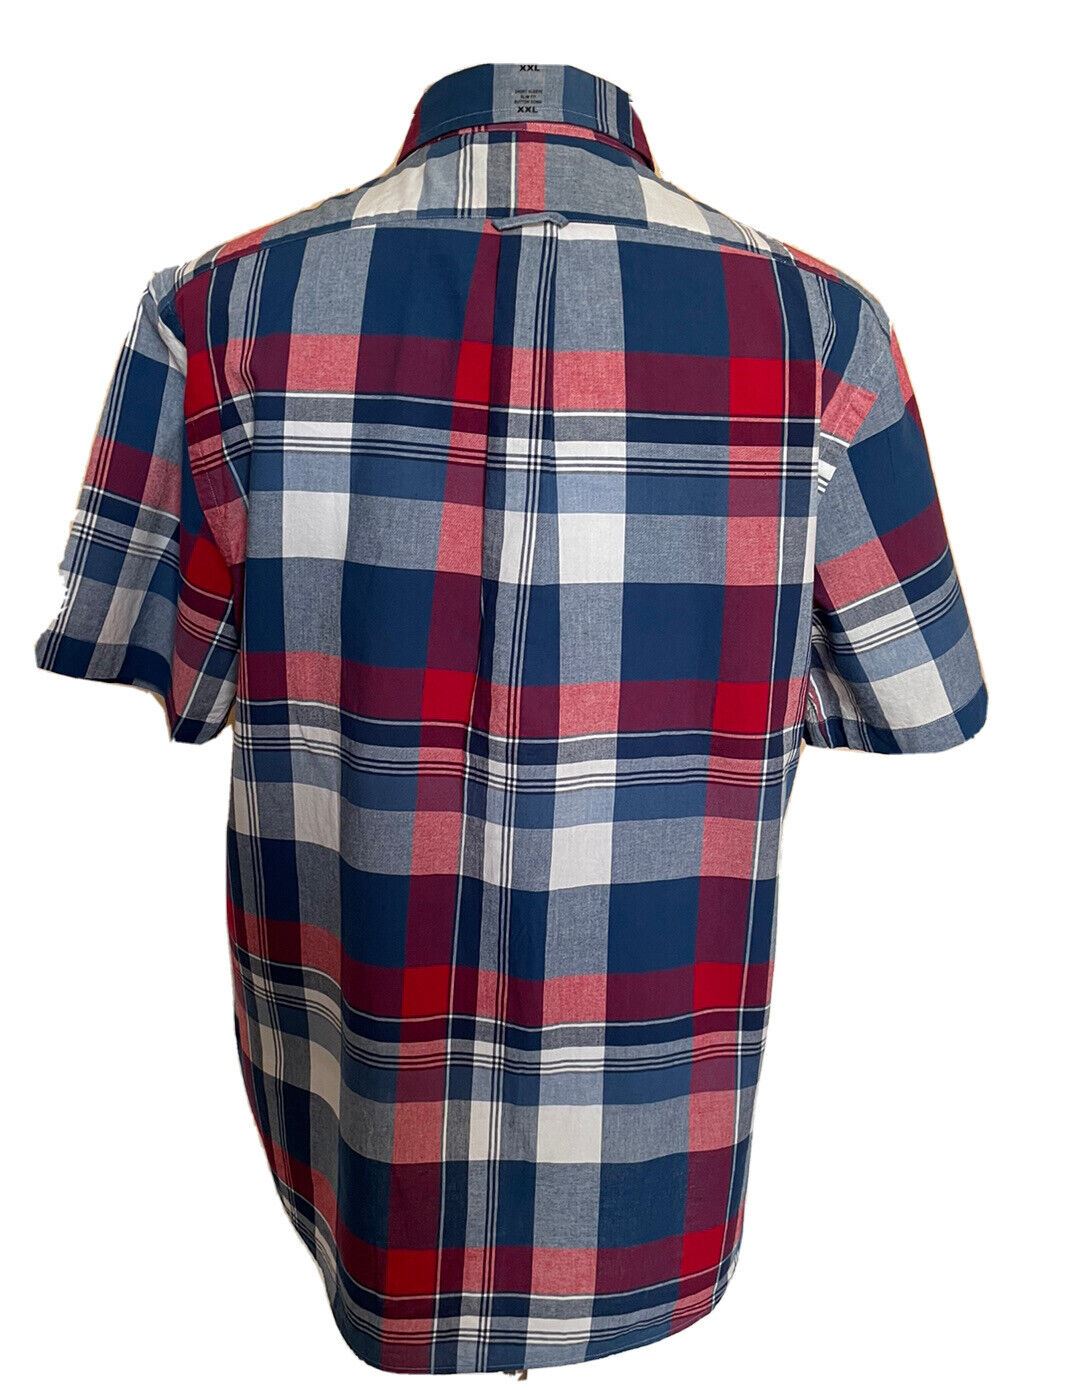 Neu mit Etikett: Polo Ralph Lauren Herren-Hemd mit kurzen Ärmeln, mehrfarbig, 2XL/2TG